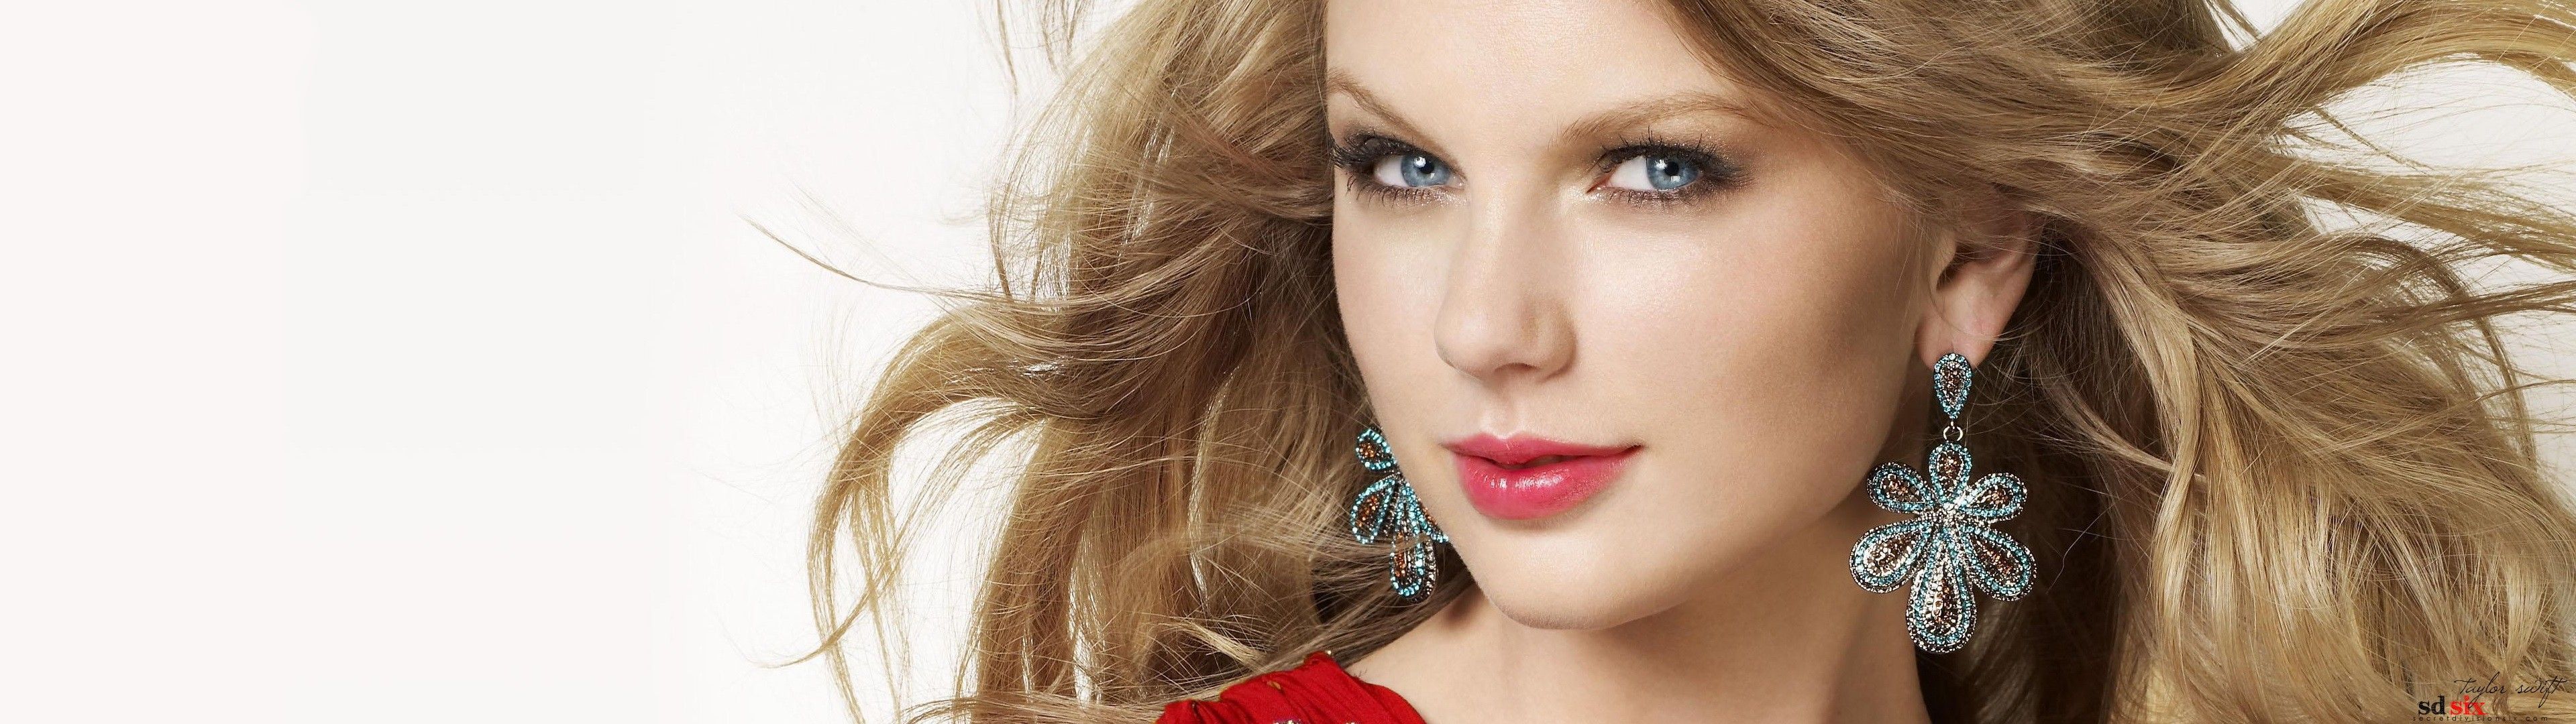 Taylor Swift Models Celebrity Hd Wallpaper